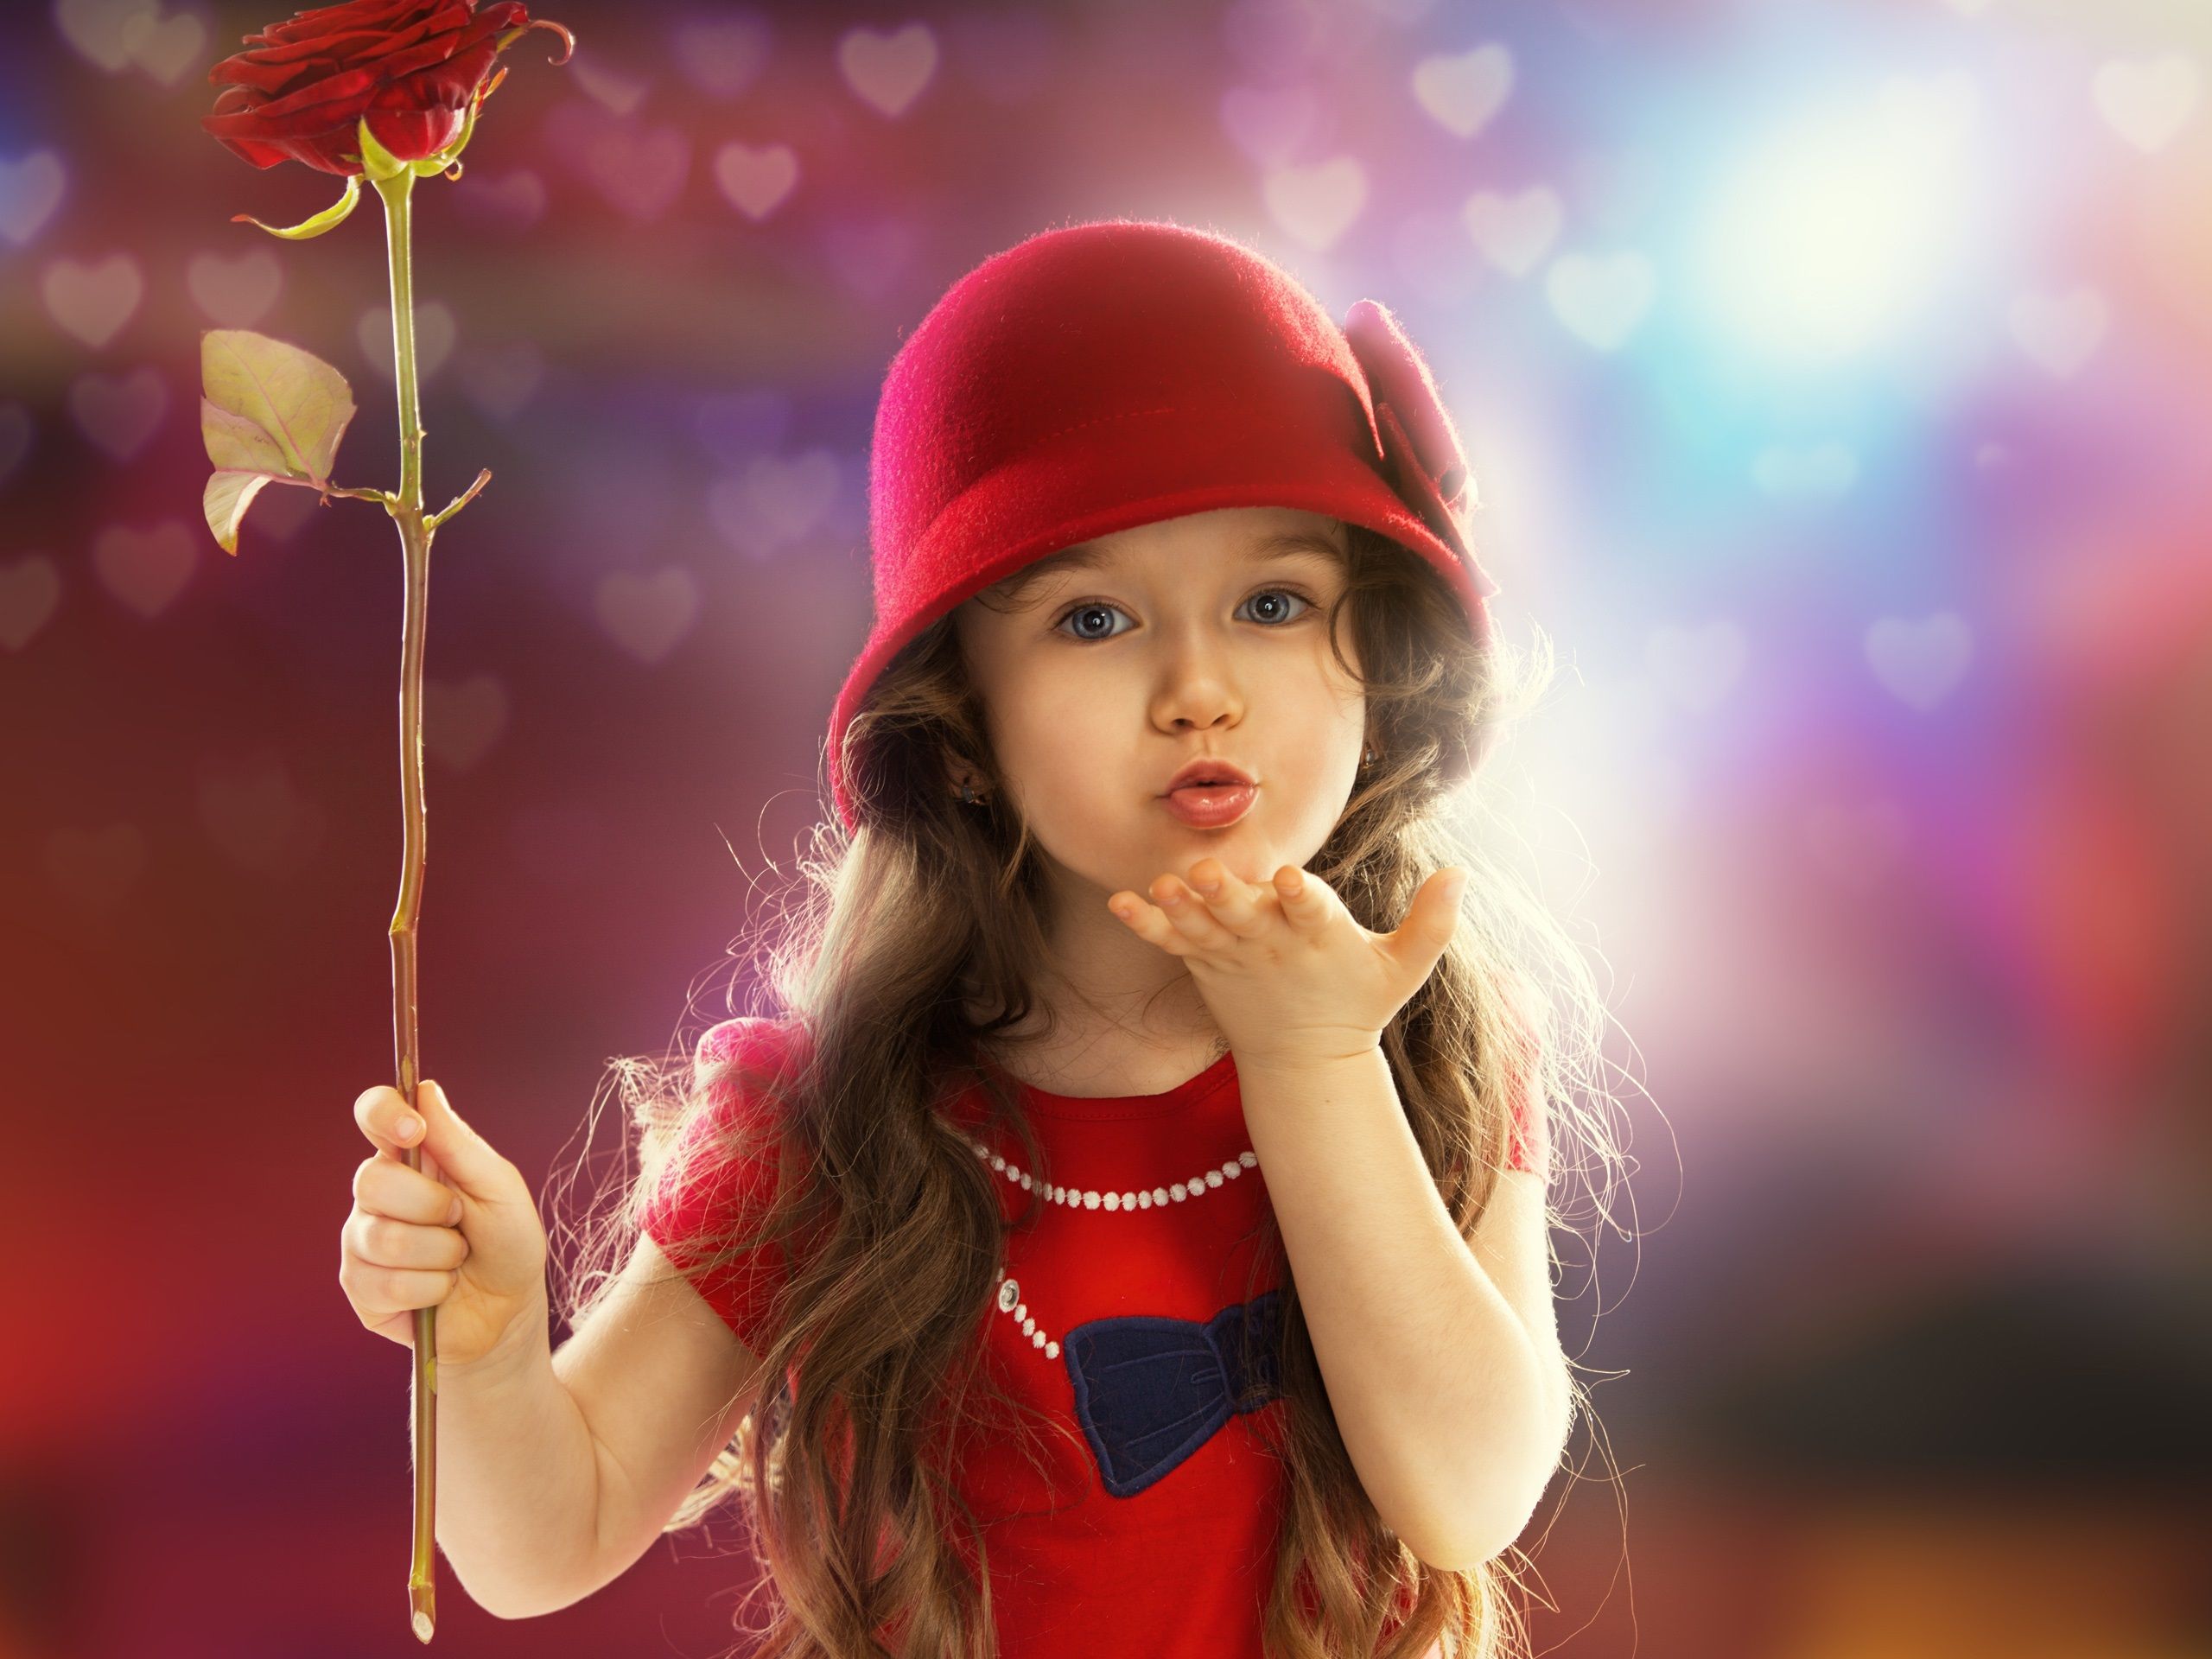 Cute red dress little girl, child, sweet kiss wallpaper 2560x1920